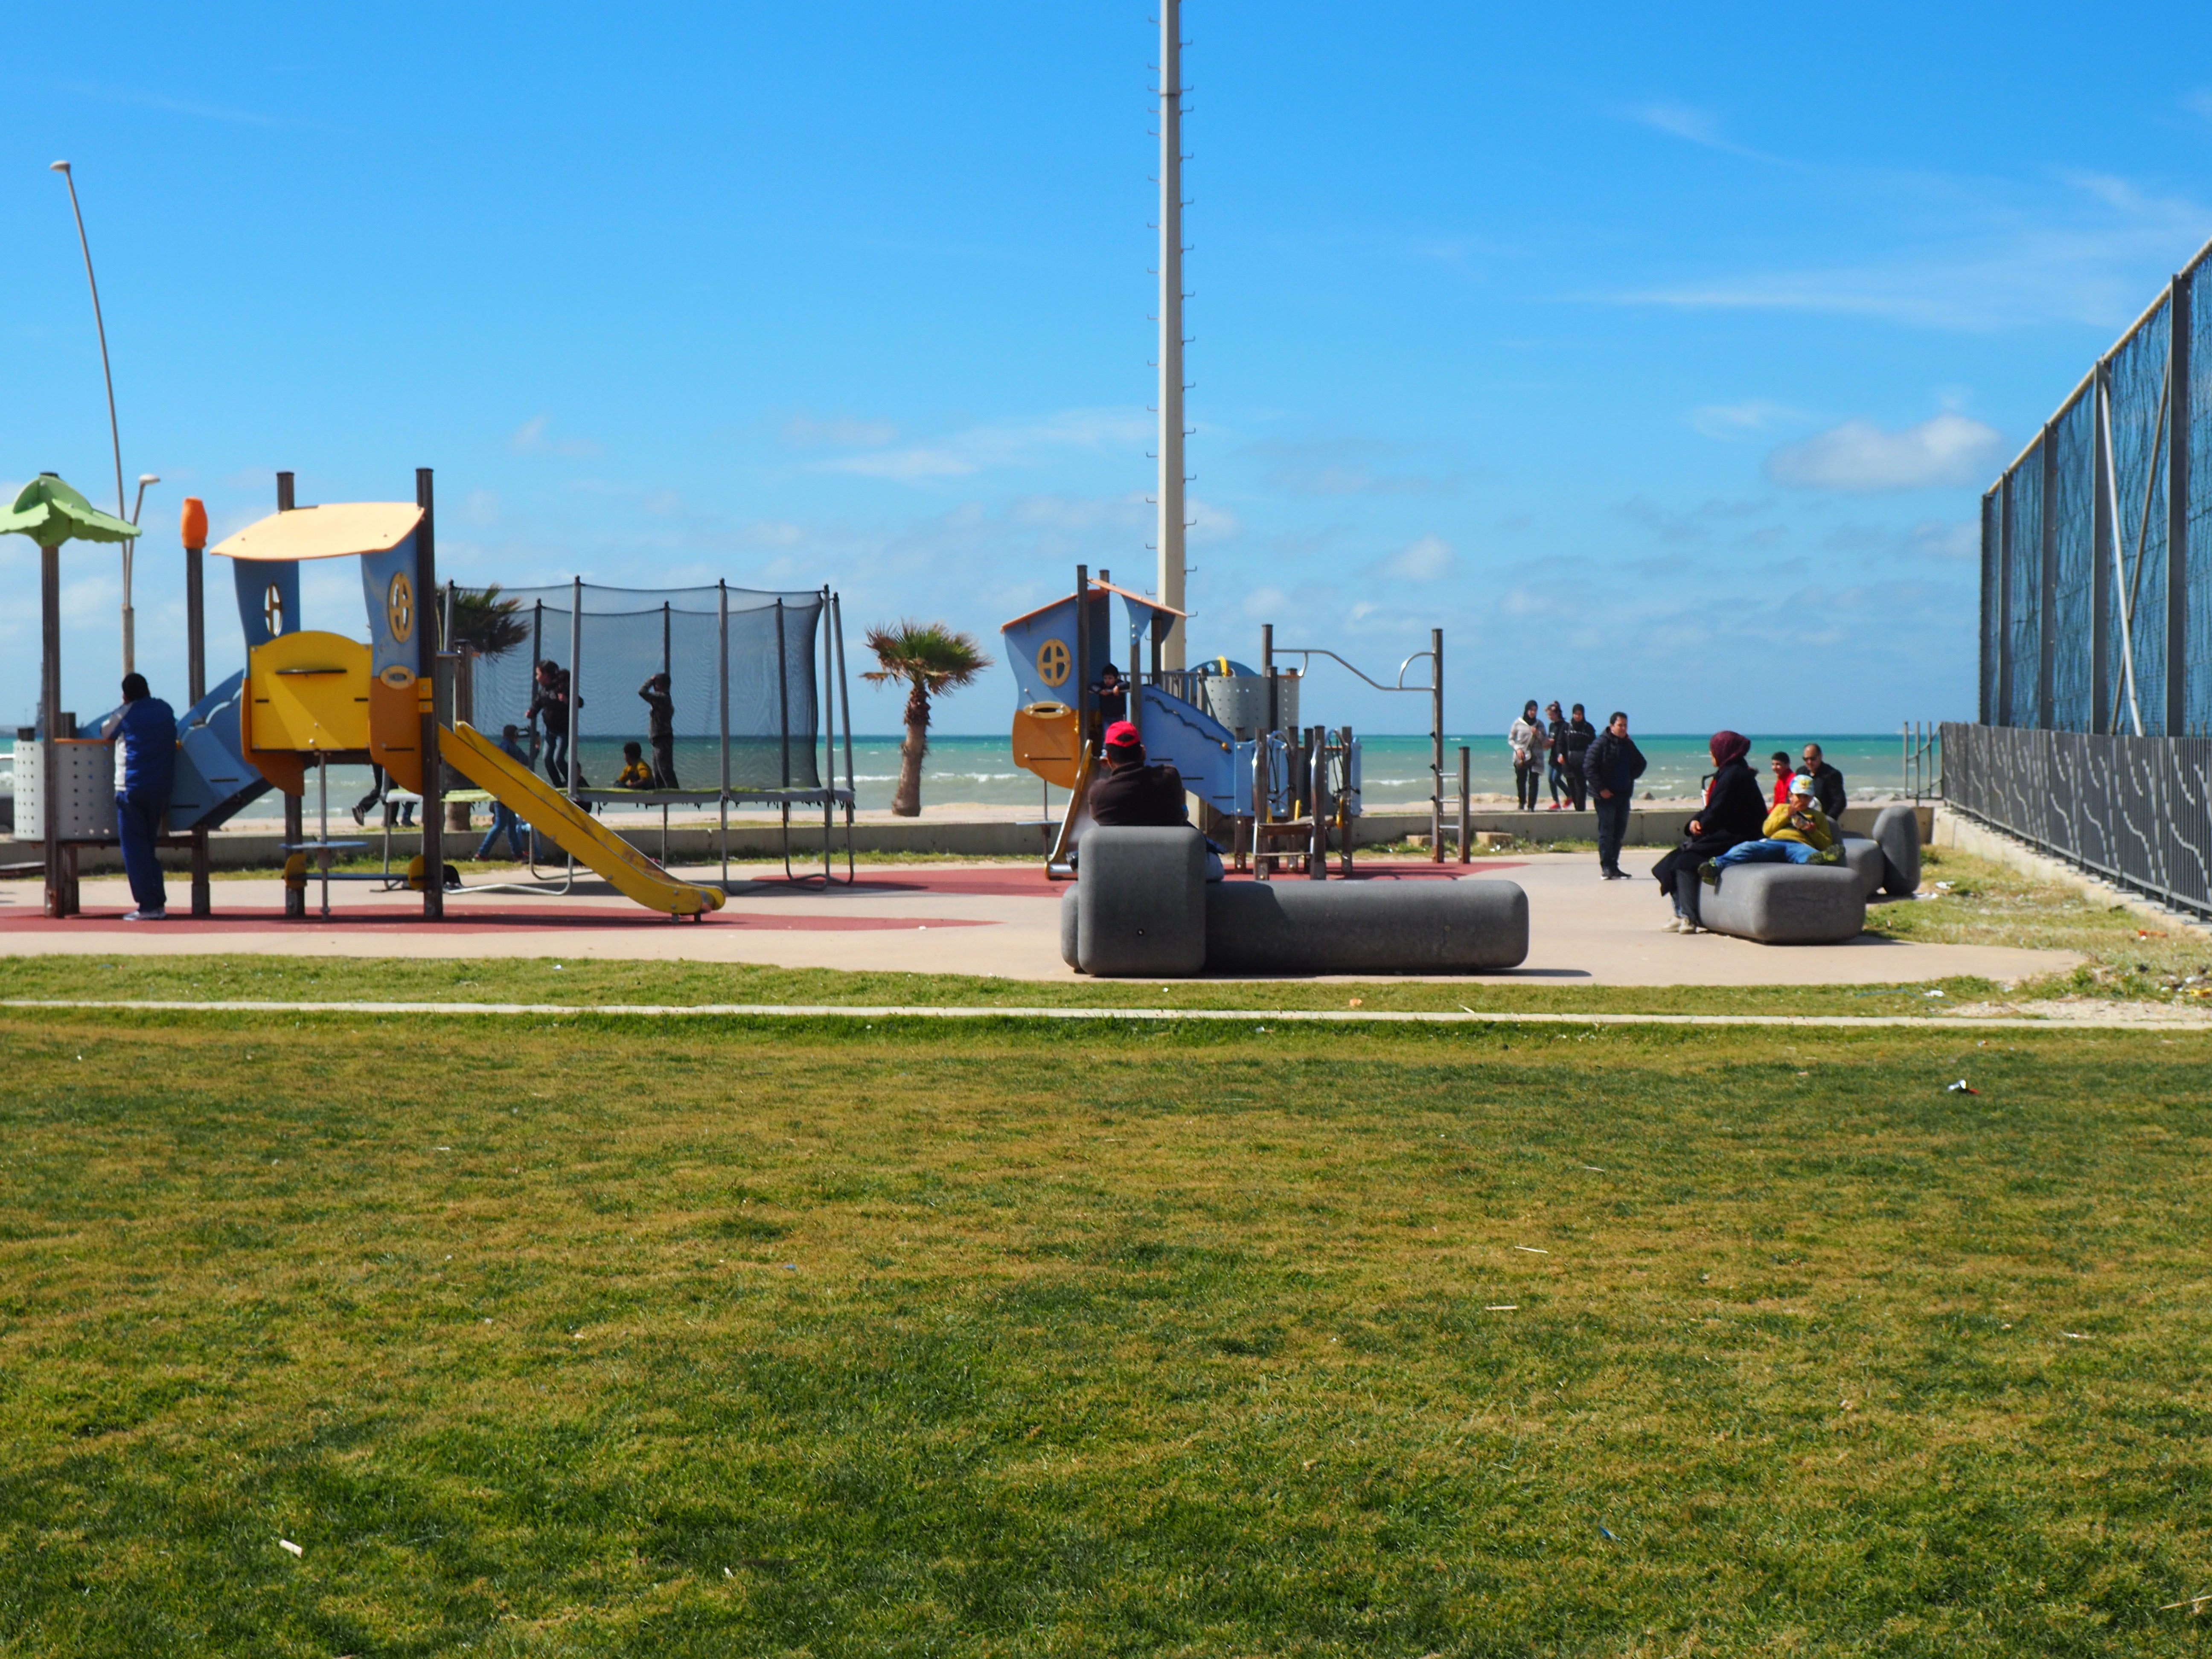 <p>View of a playground area in the Corniche Garden</p>